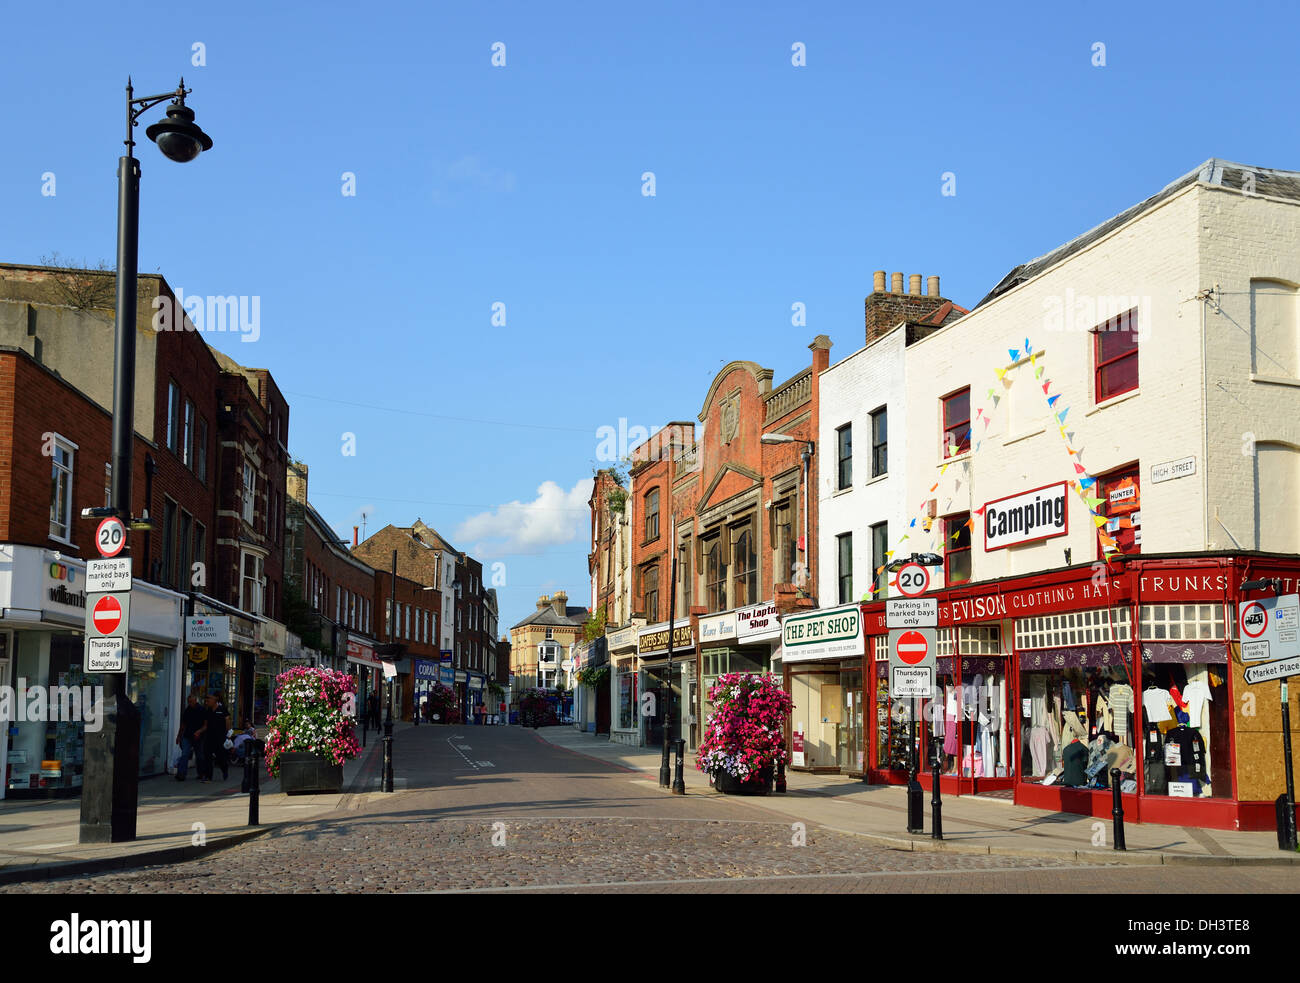 High Street, au crépuscule, Wisbech, Cambridgeshire, Angleterre, Royaume-Uni Banque D'Images